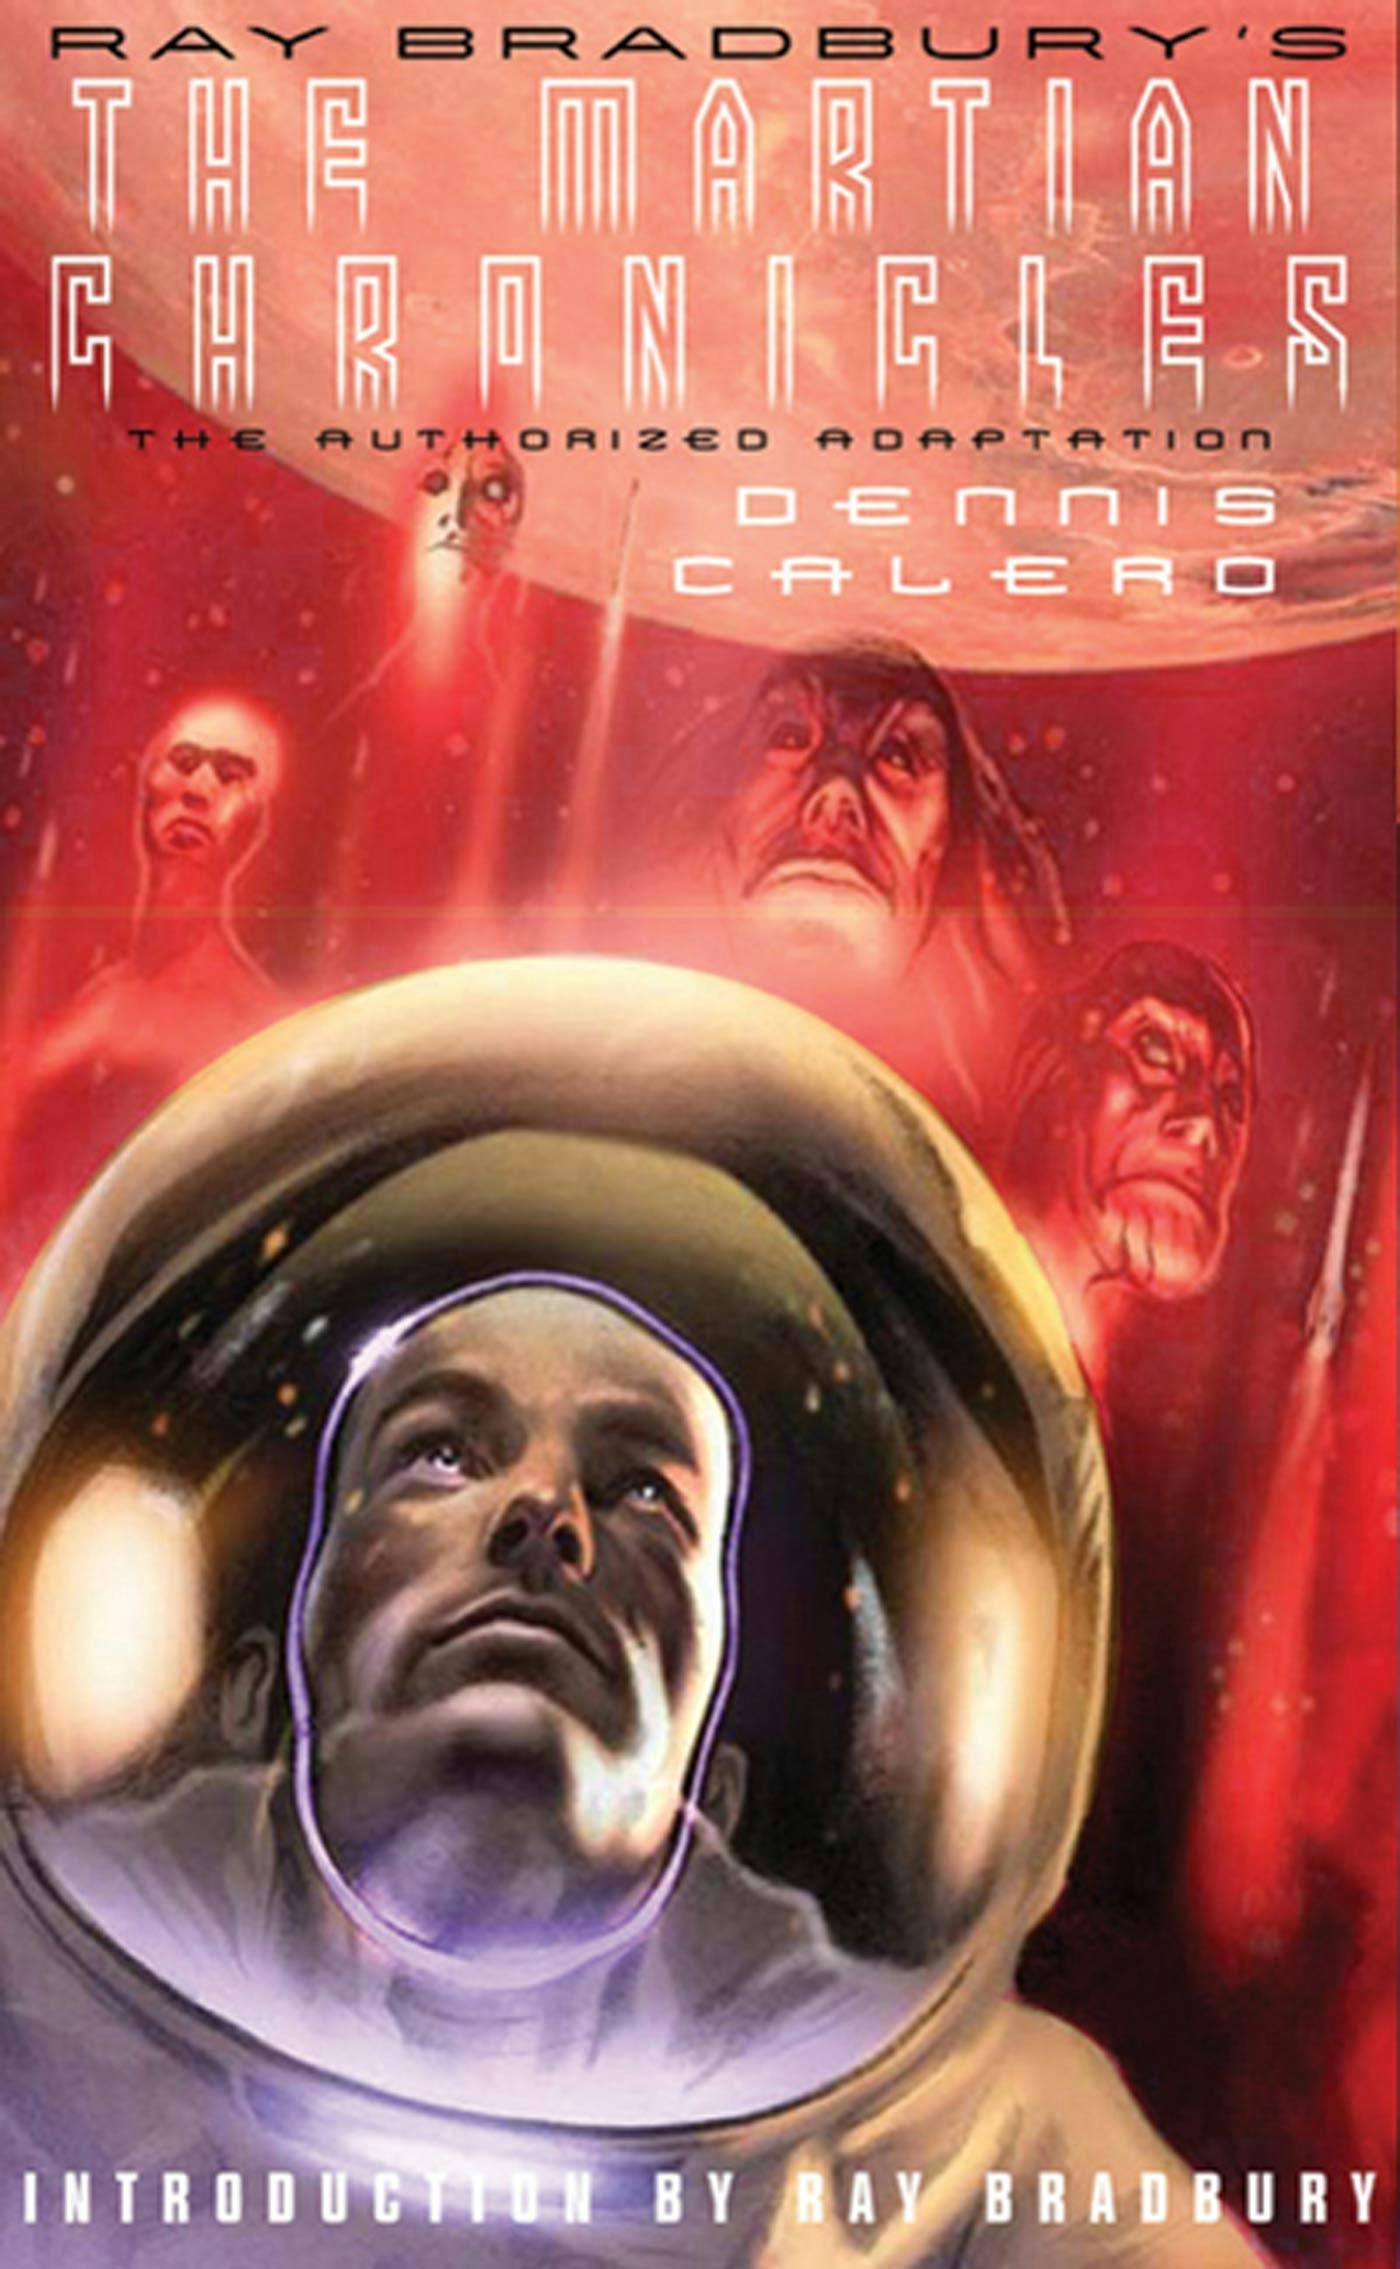 The Martian Chronicles by Ray Bradbury